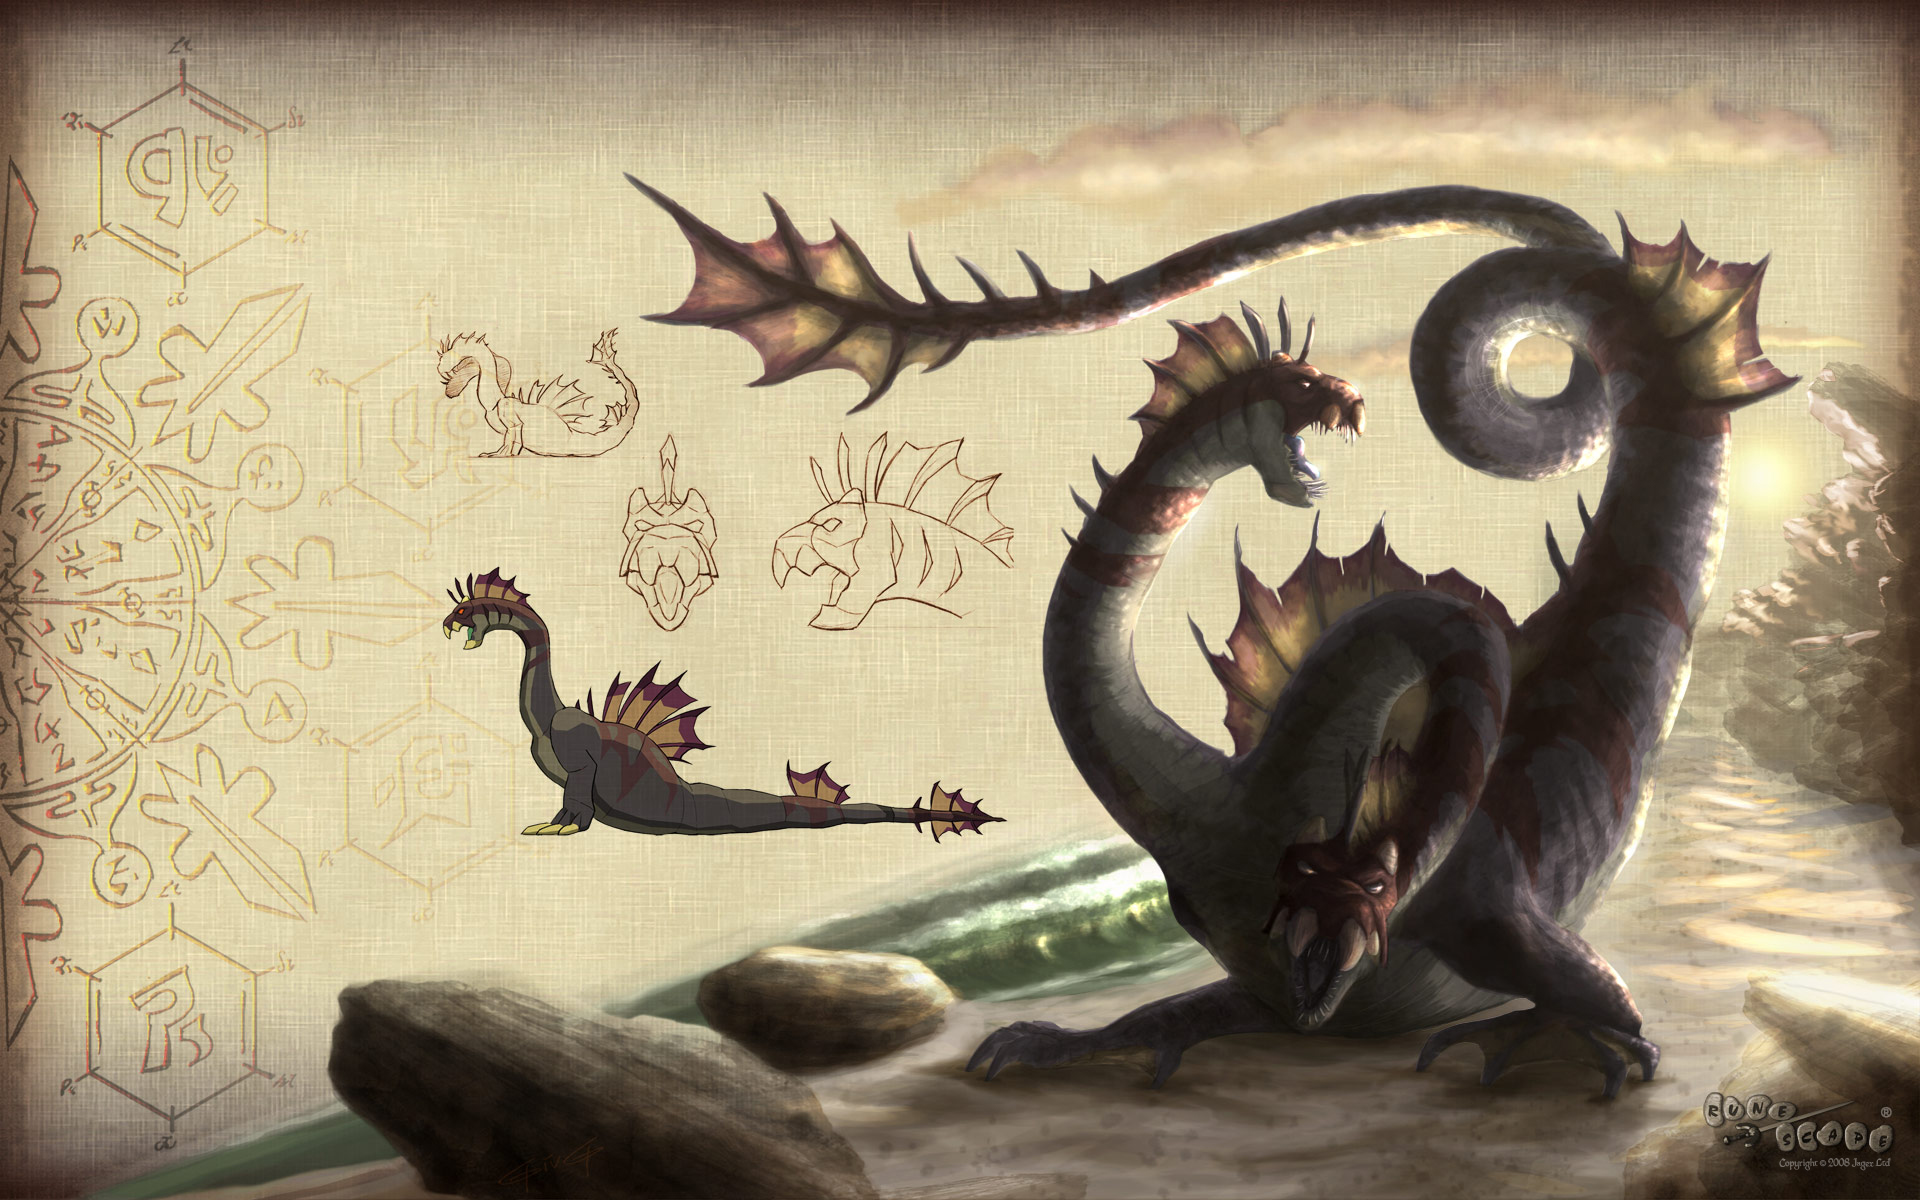 Dragon adventures fantasy pets. Приключения драконов. Дракон Адвенчерс концепт арт. Драконы в приключениях дракона.